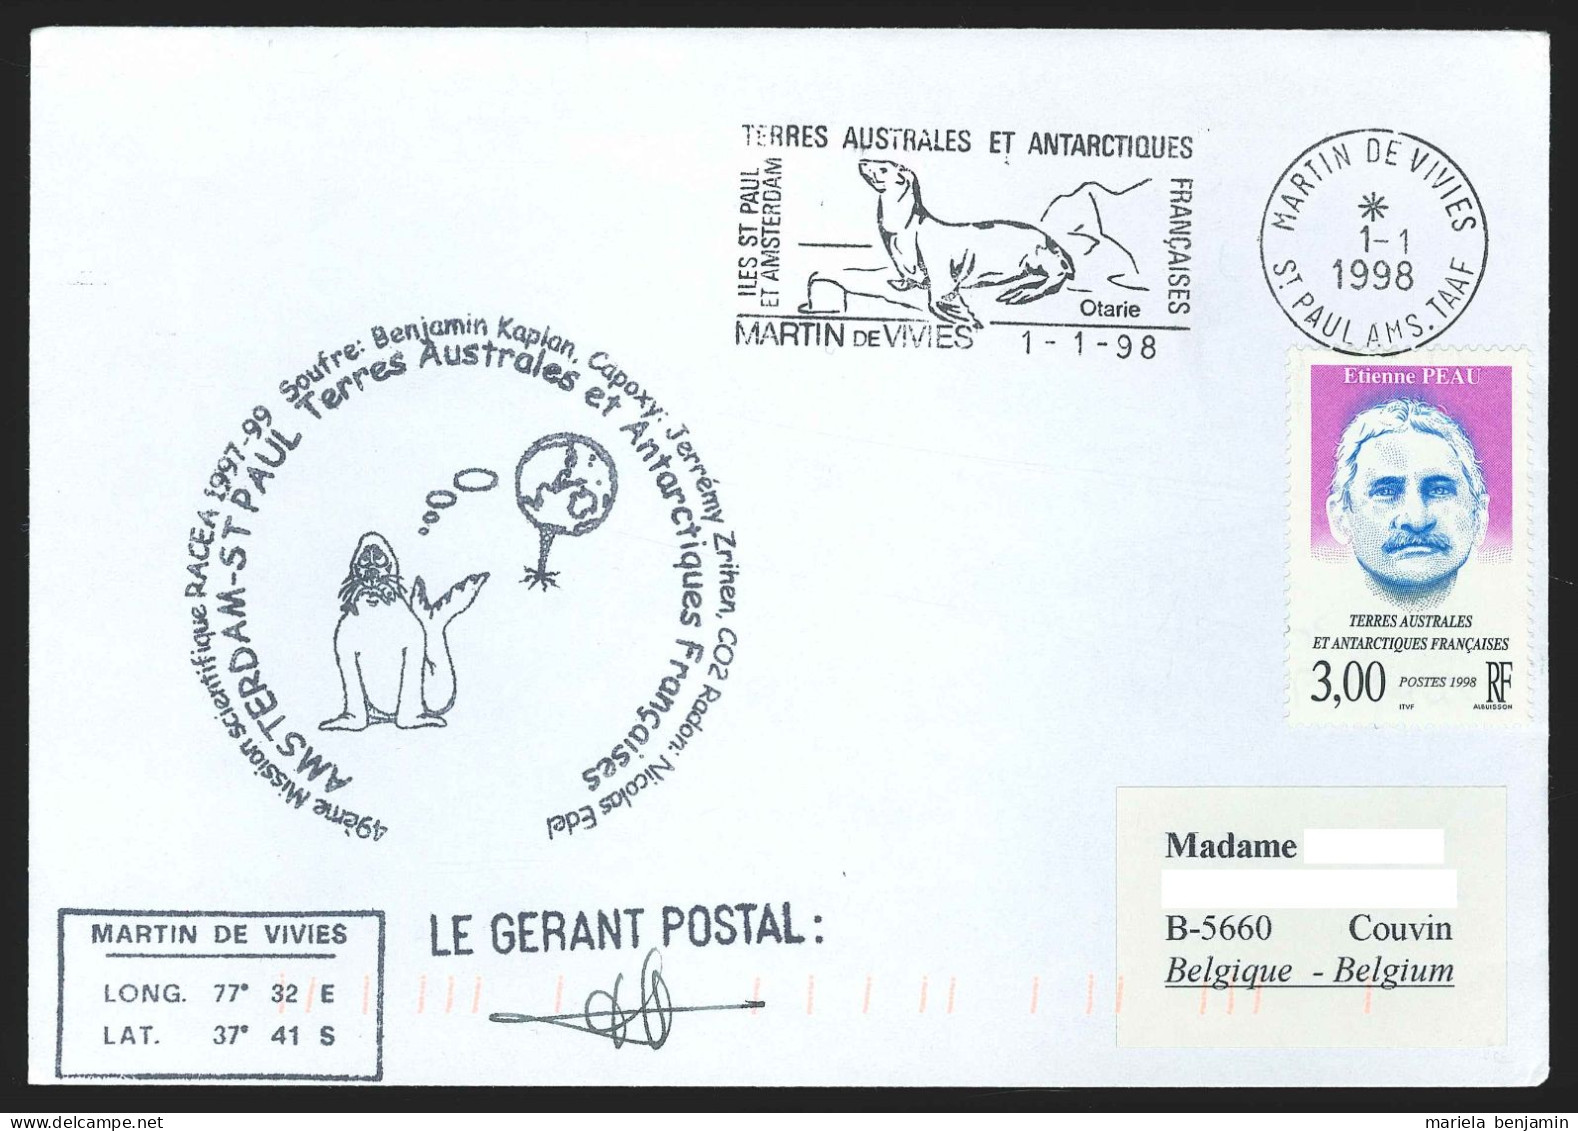 TAAF - St-Paul & Amsterdam - RACEA 49e Mission Affr. Etienne Peau Oblit. 1e Jour Martin-de-Viviès 1-1-1998 - Briefe U. Dokumente